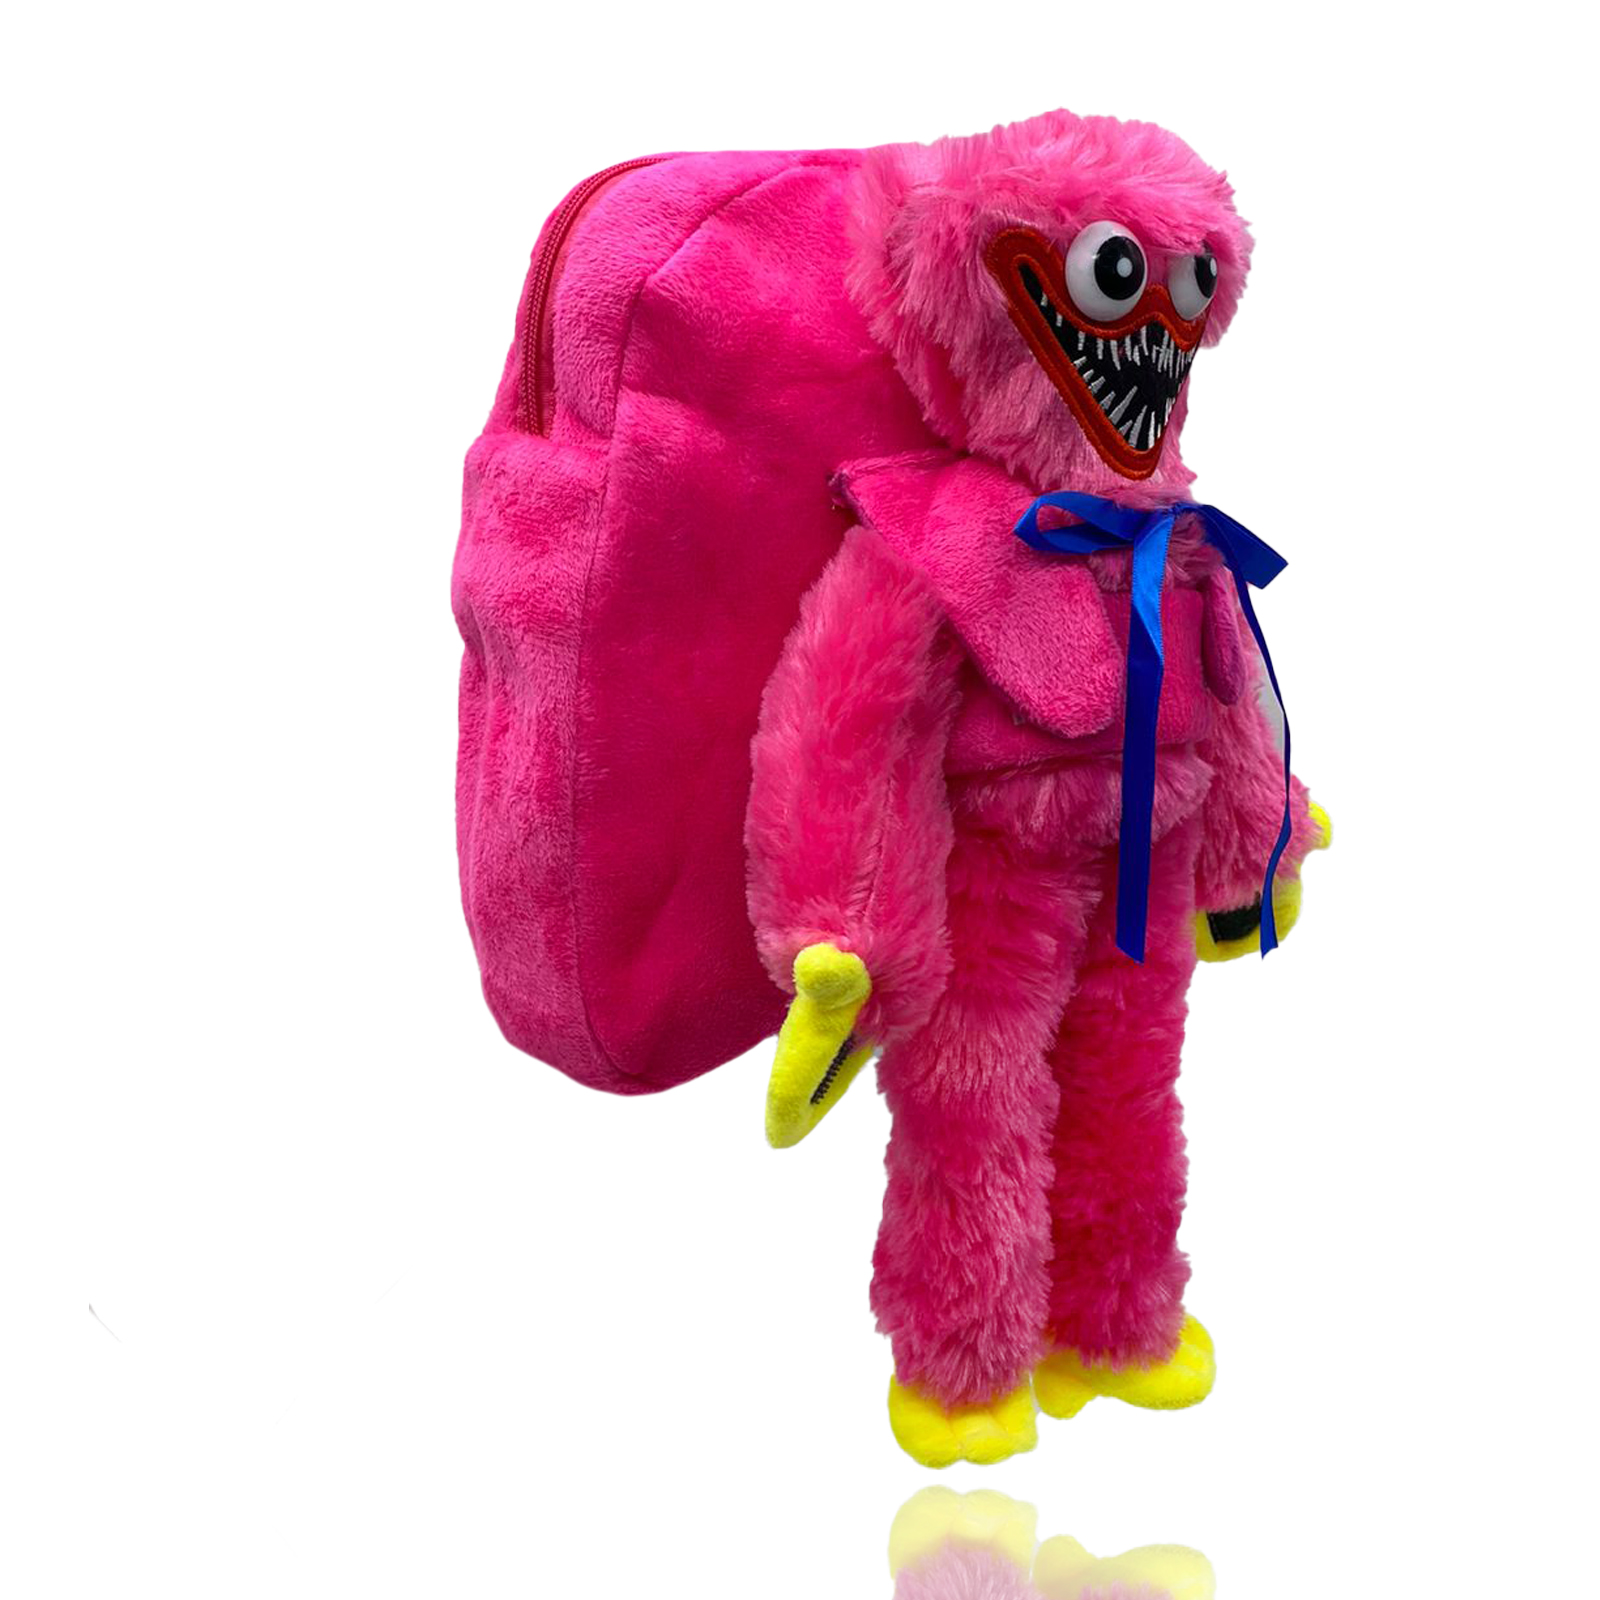 Рюкзак Nano Shop Хаги Ваги Киси Миси с мягкой игрушкой, розовый